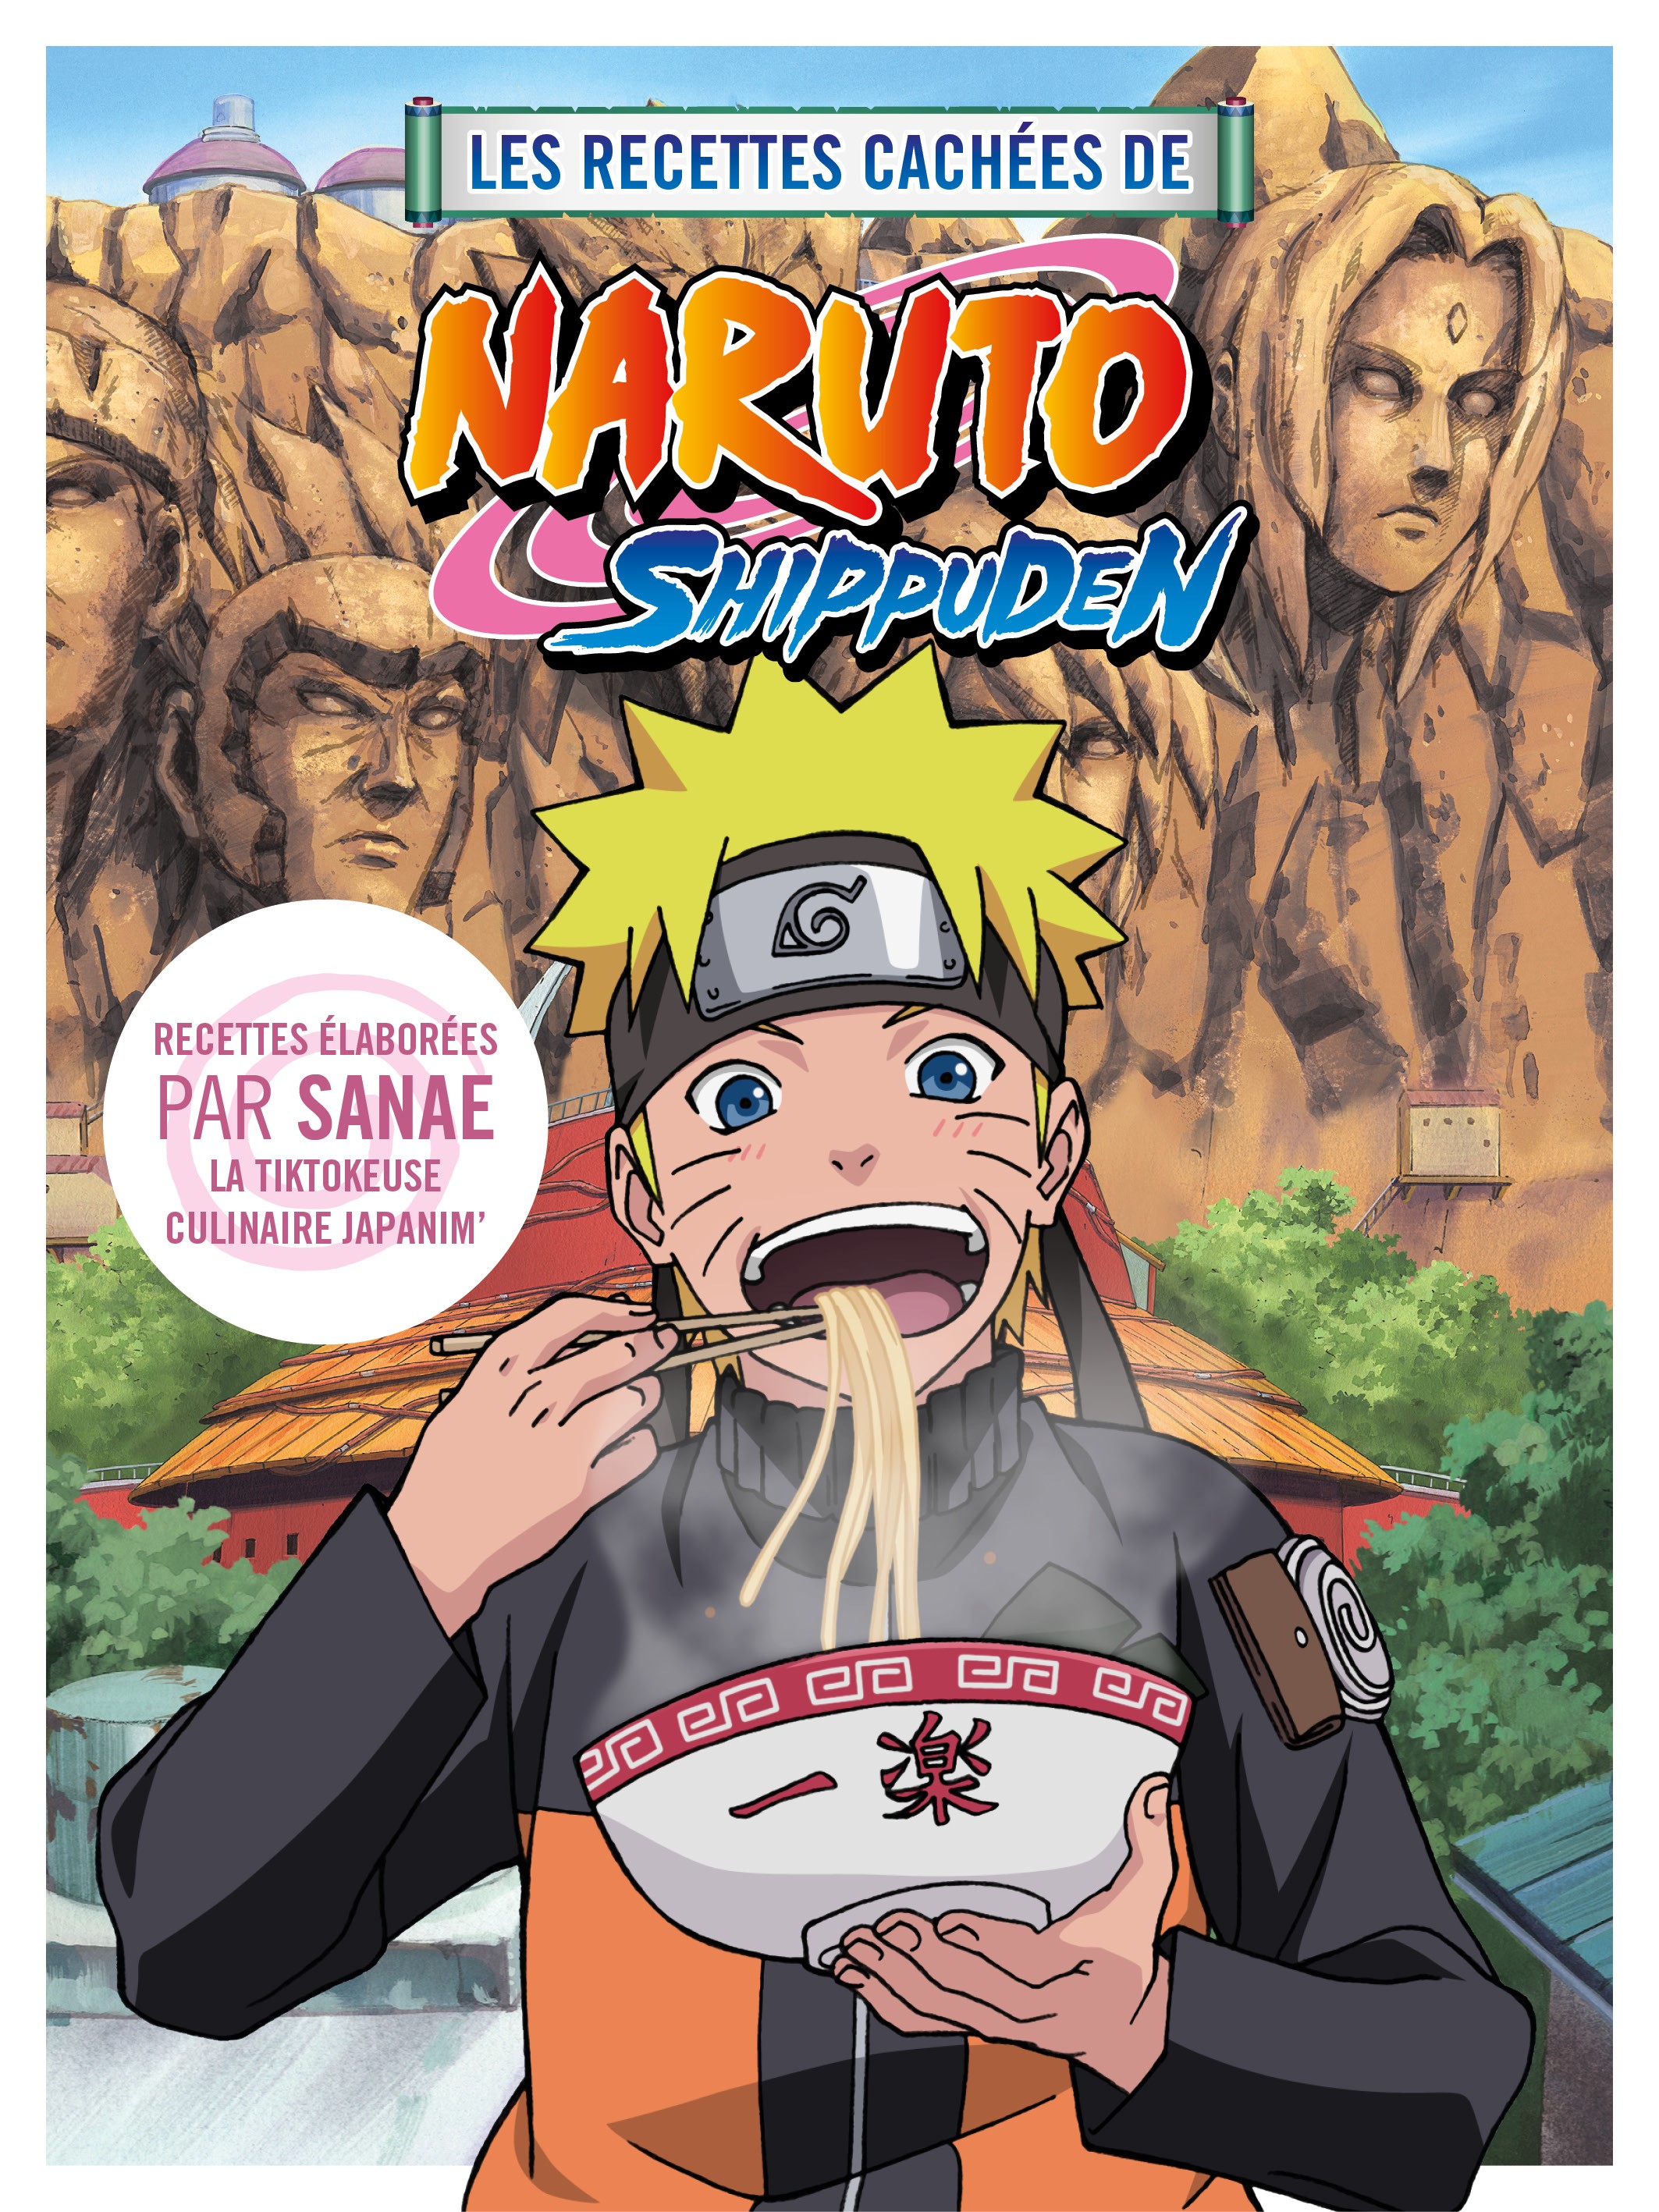 Les recettes cachées de Naruto Shippuden - couv